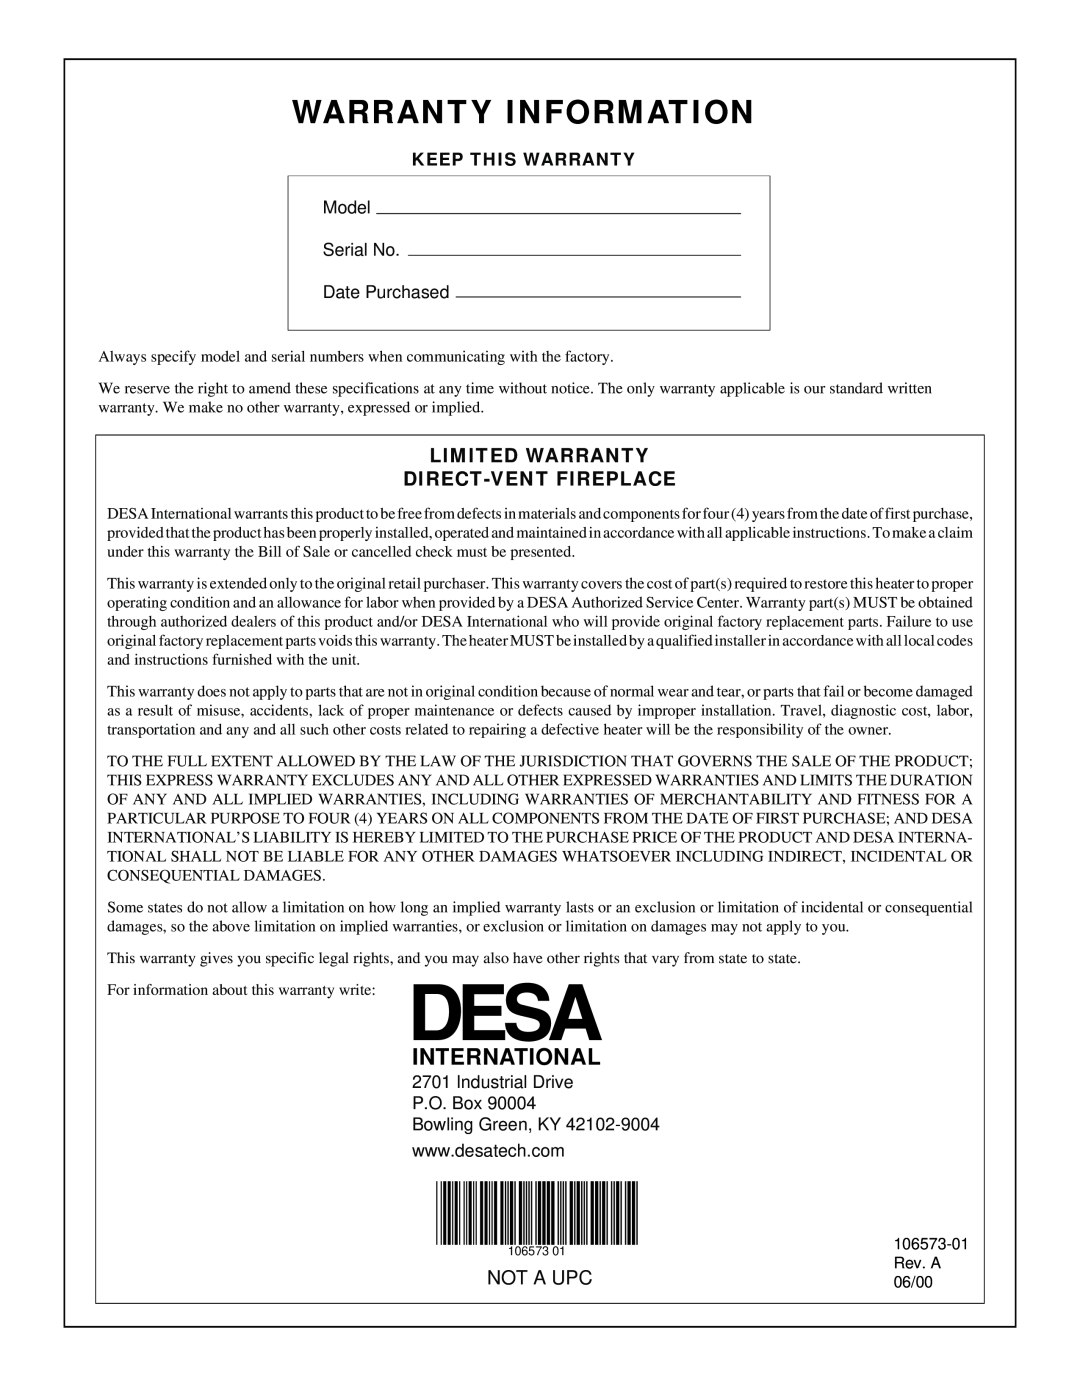 Desa EVDDVF36PN Warranty Information, Limited Warranty Direct-Vent Fireplace, International, Not A Upc, Rev. A, 06/00 